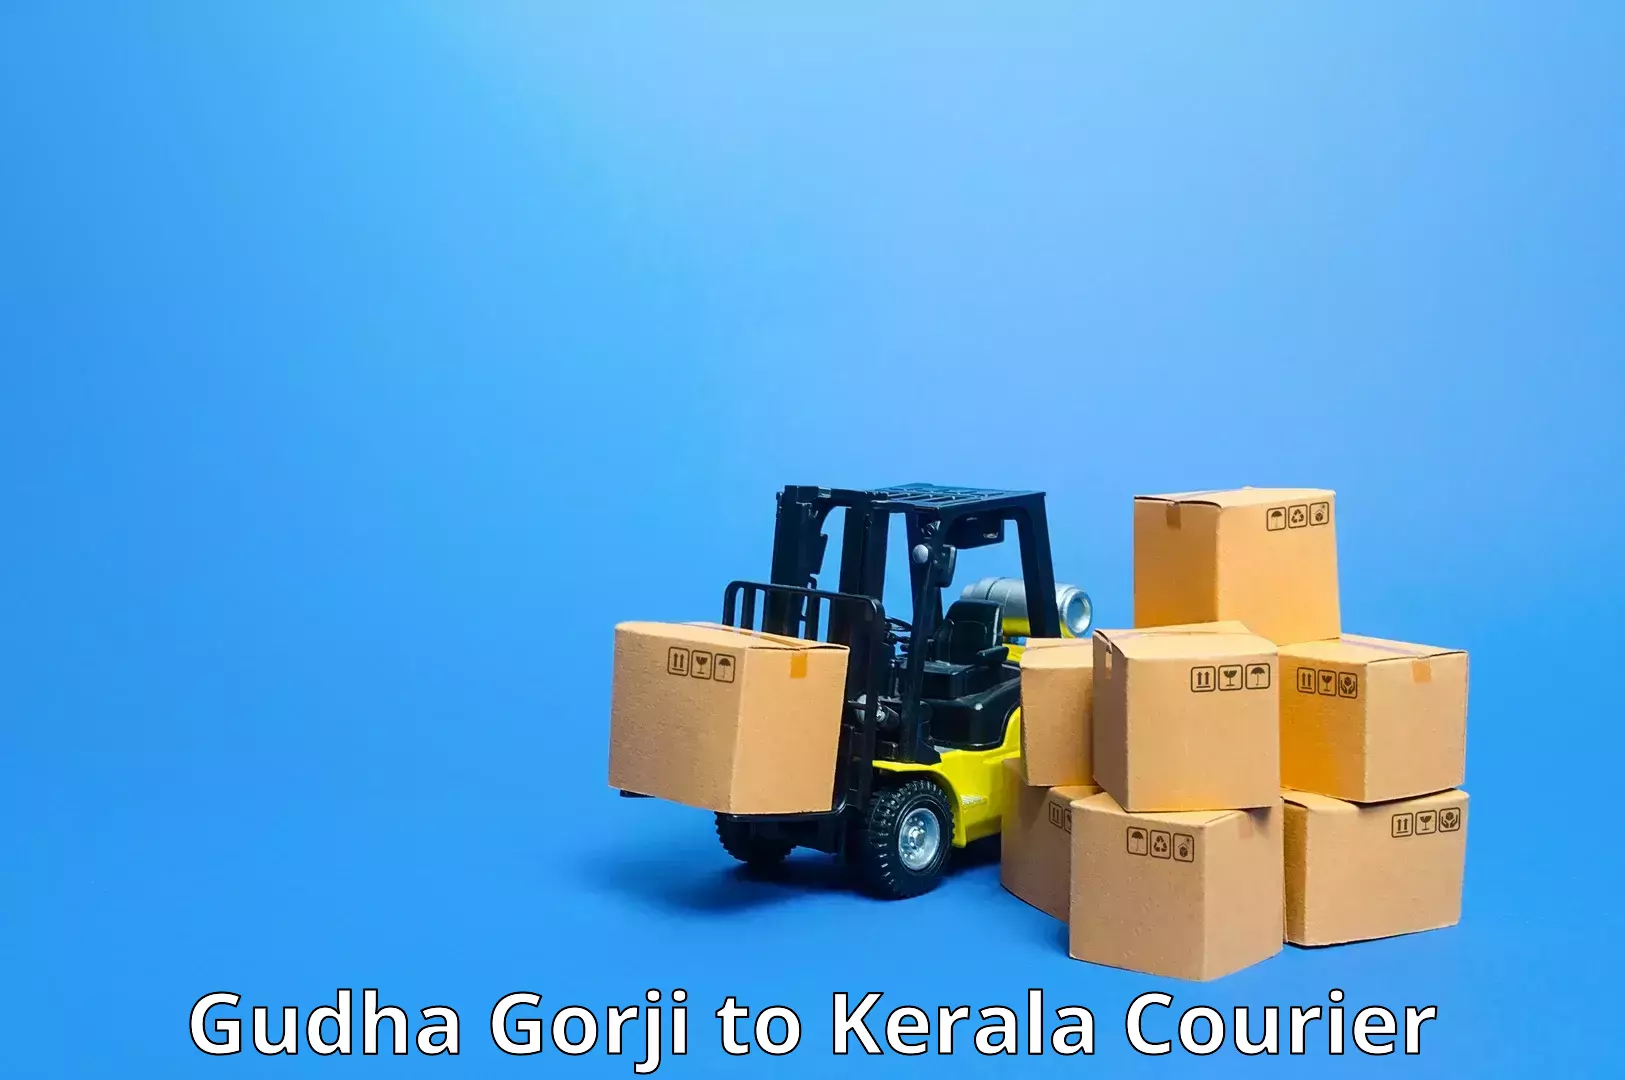 Courier service comparison in Gudha Gorji to Kazhakkoottam